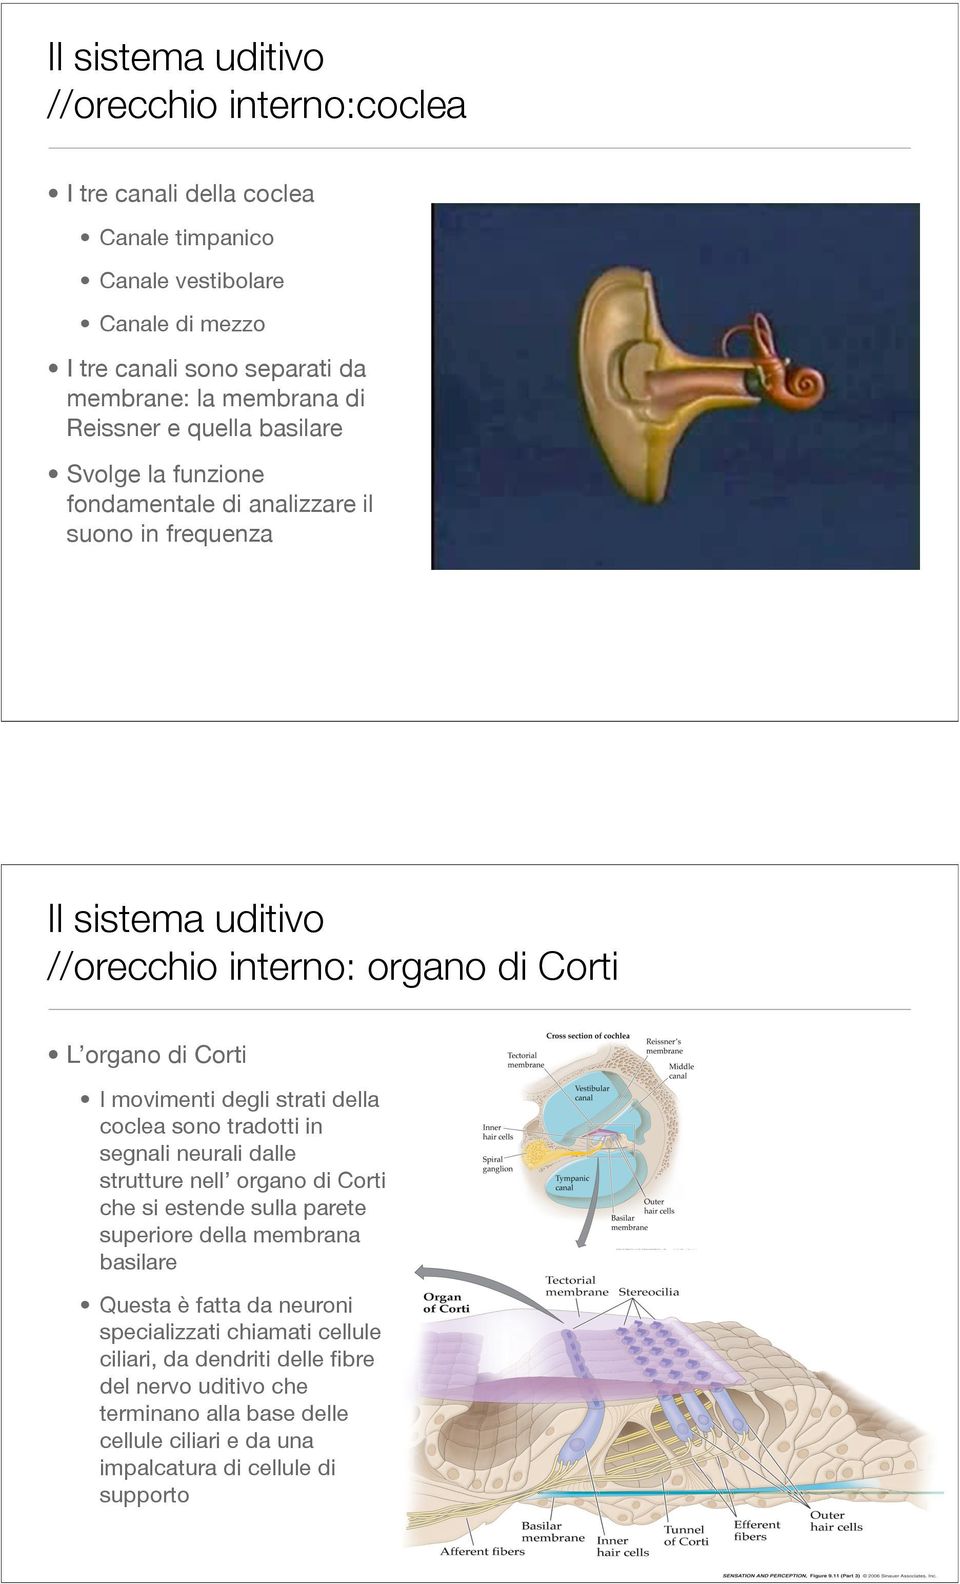 della coclea sono tradotti in segnali neurali dalle strutture nell organo di Corti che si estende sulla parete superiore della membrana basilare Questa è fatta da